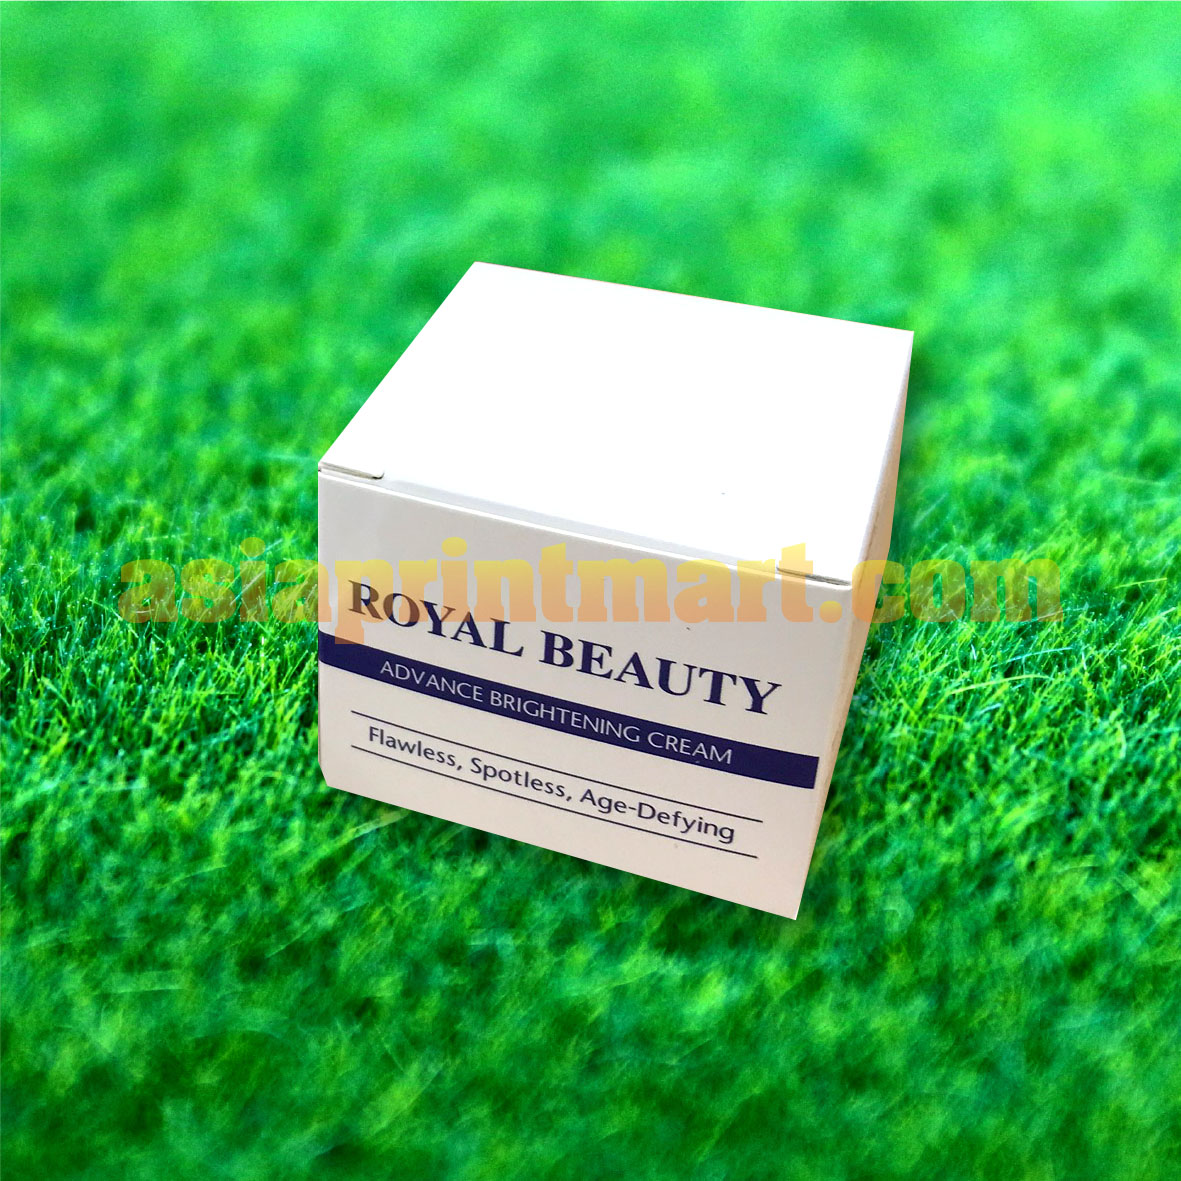 Kilang Cetak Kotak Murah, Cosmetics Box Printing Supplier, Beauty Packaging Box Company, Kedai Cetak Kotak Kosmetik